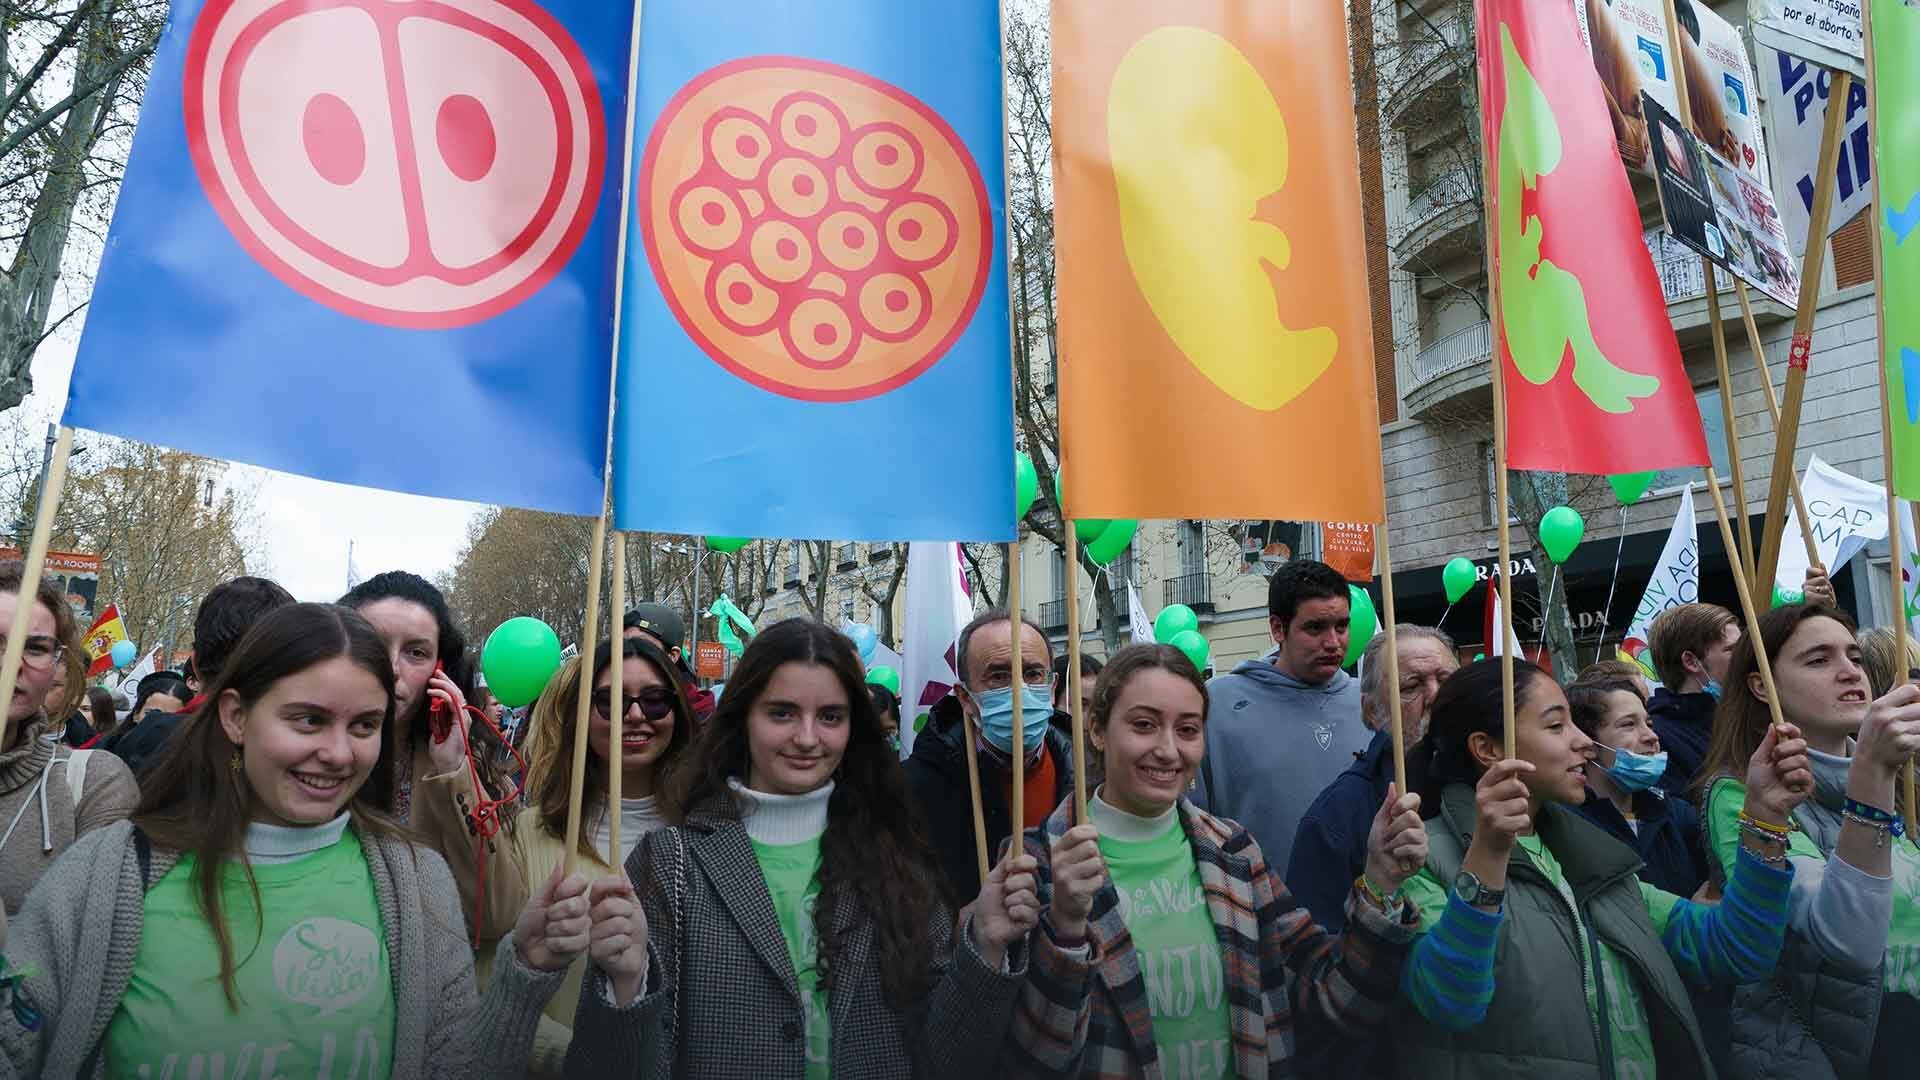 In Spagna, molestare o intimidire le donne che vogliono abortire adesso è reato